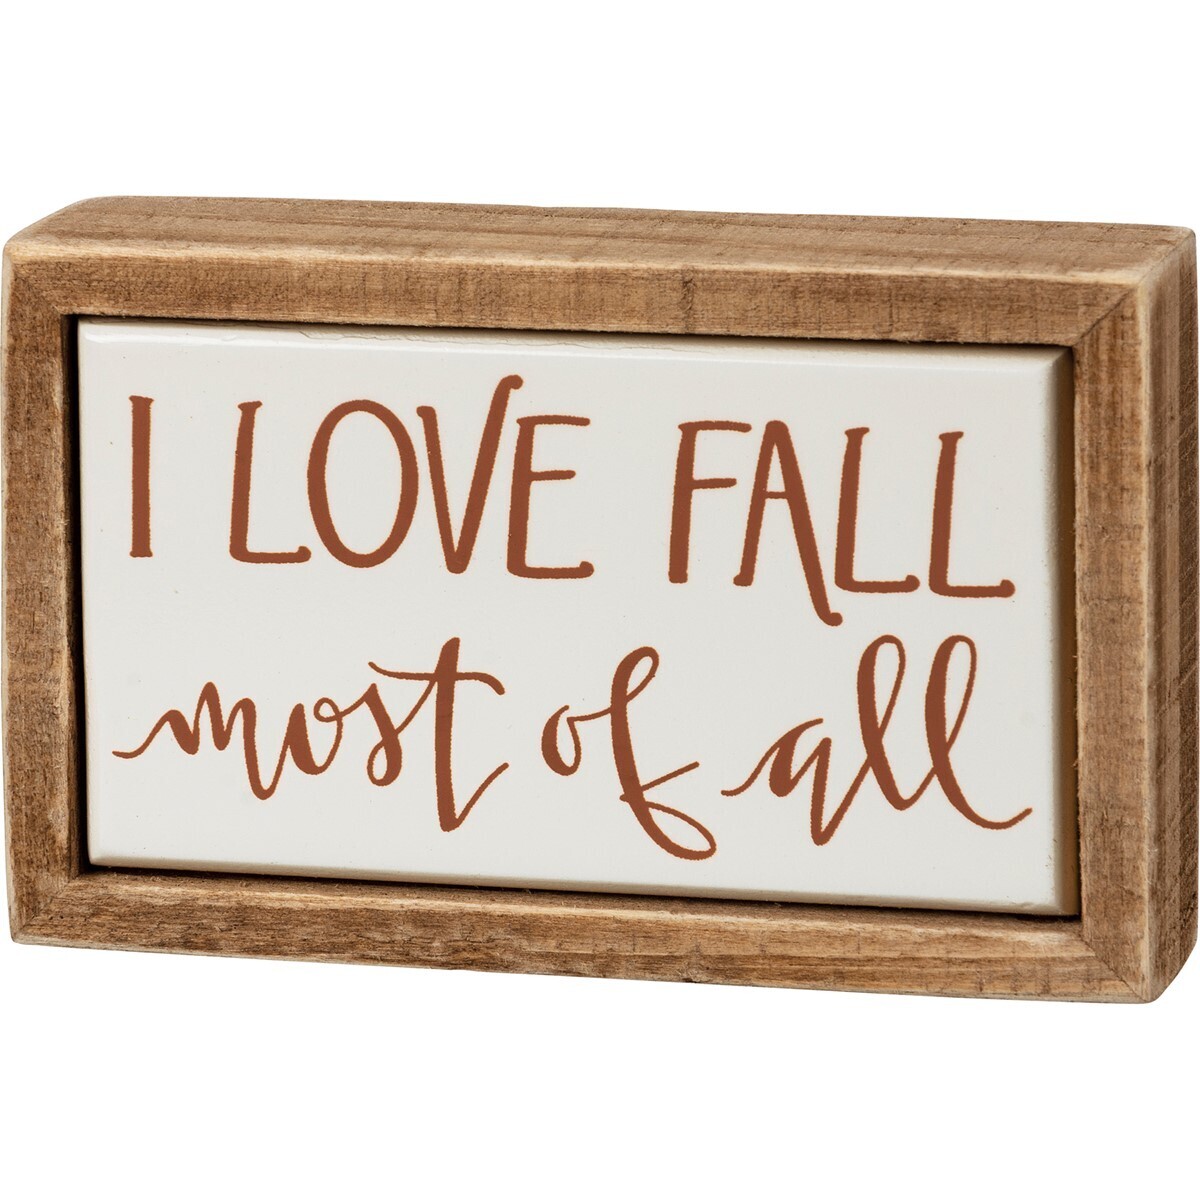 I Love Fall Mini Box Sign